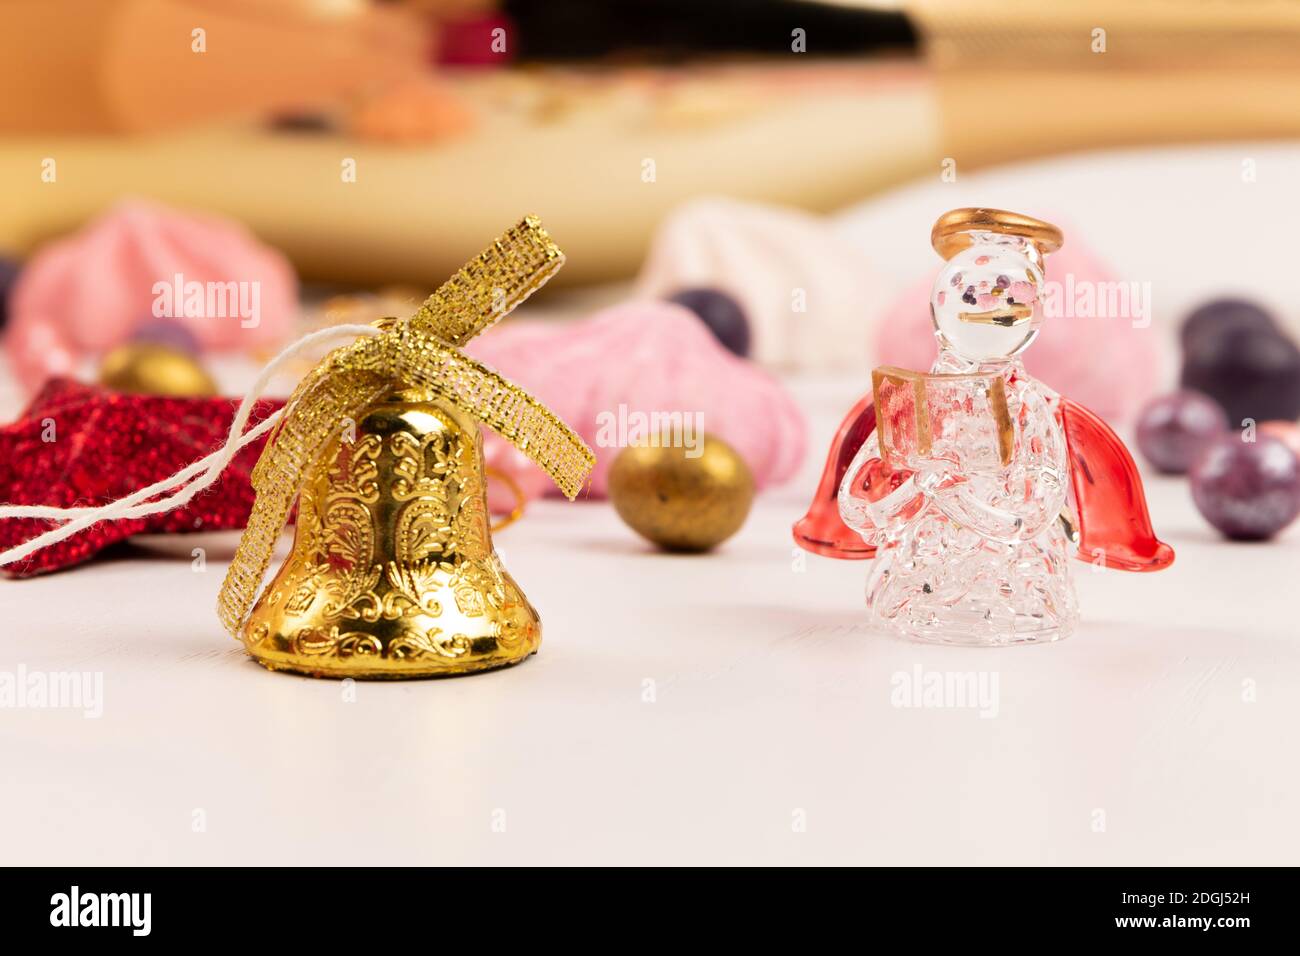 Bunte Dragee Bonbons, Glocke, Kristallengel und Baiser Kuchen auf einem weißen Holztisch Stockfoto